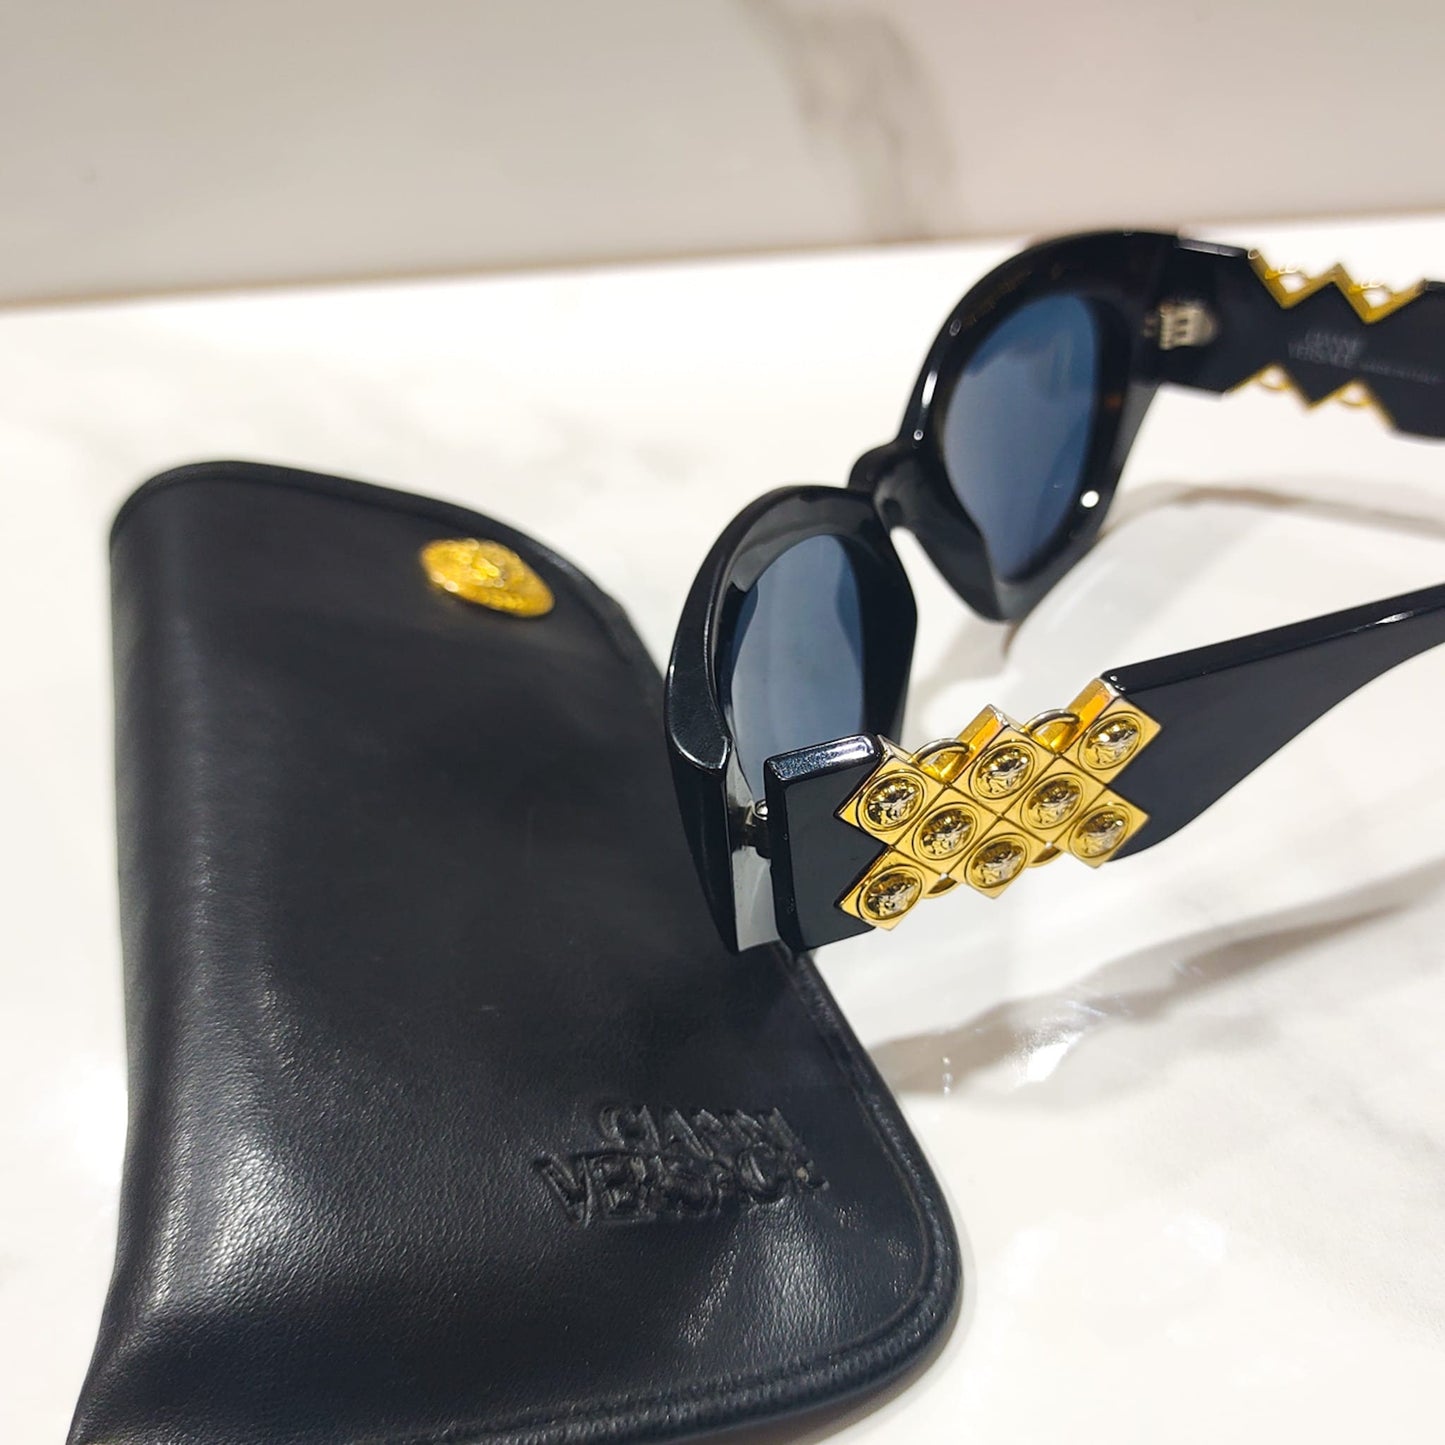 Gianni Versace 420 H vintage sunglasses brille lunette